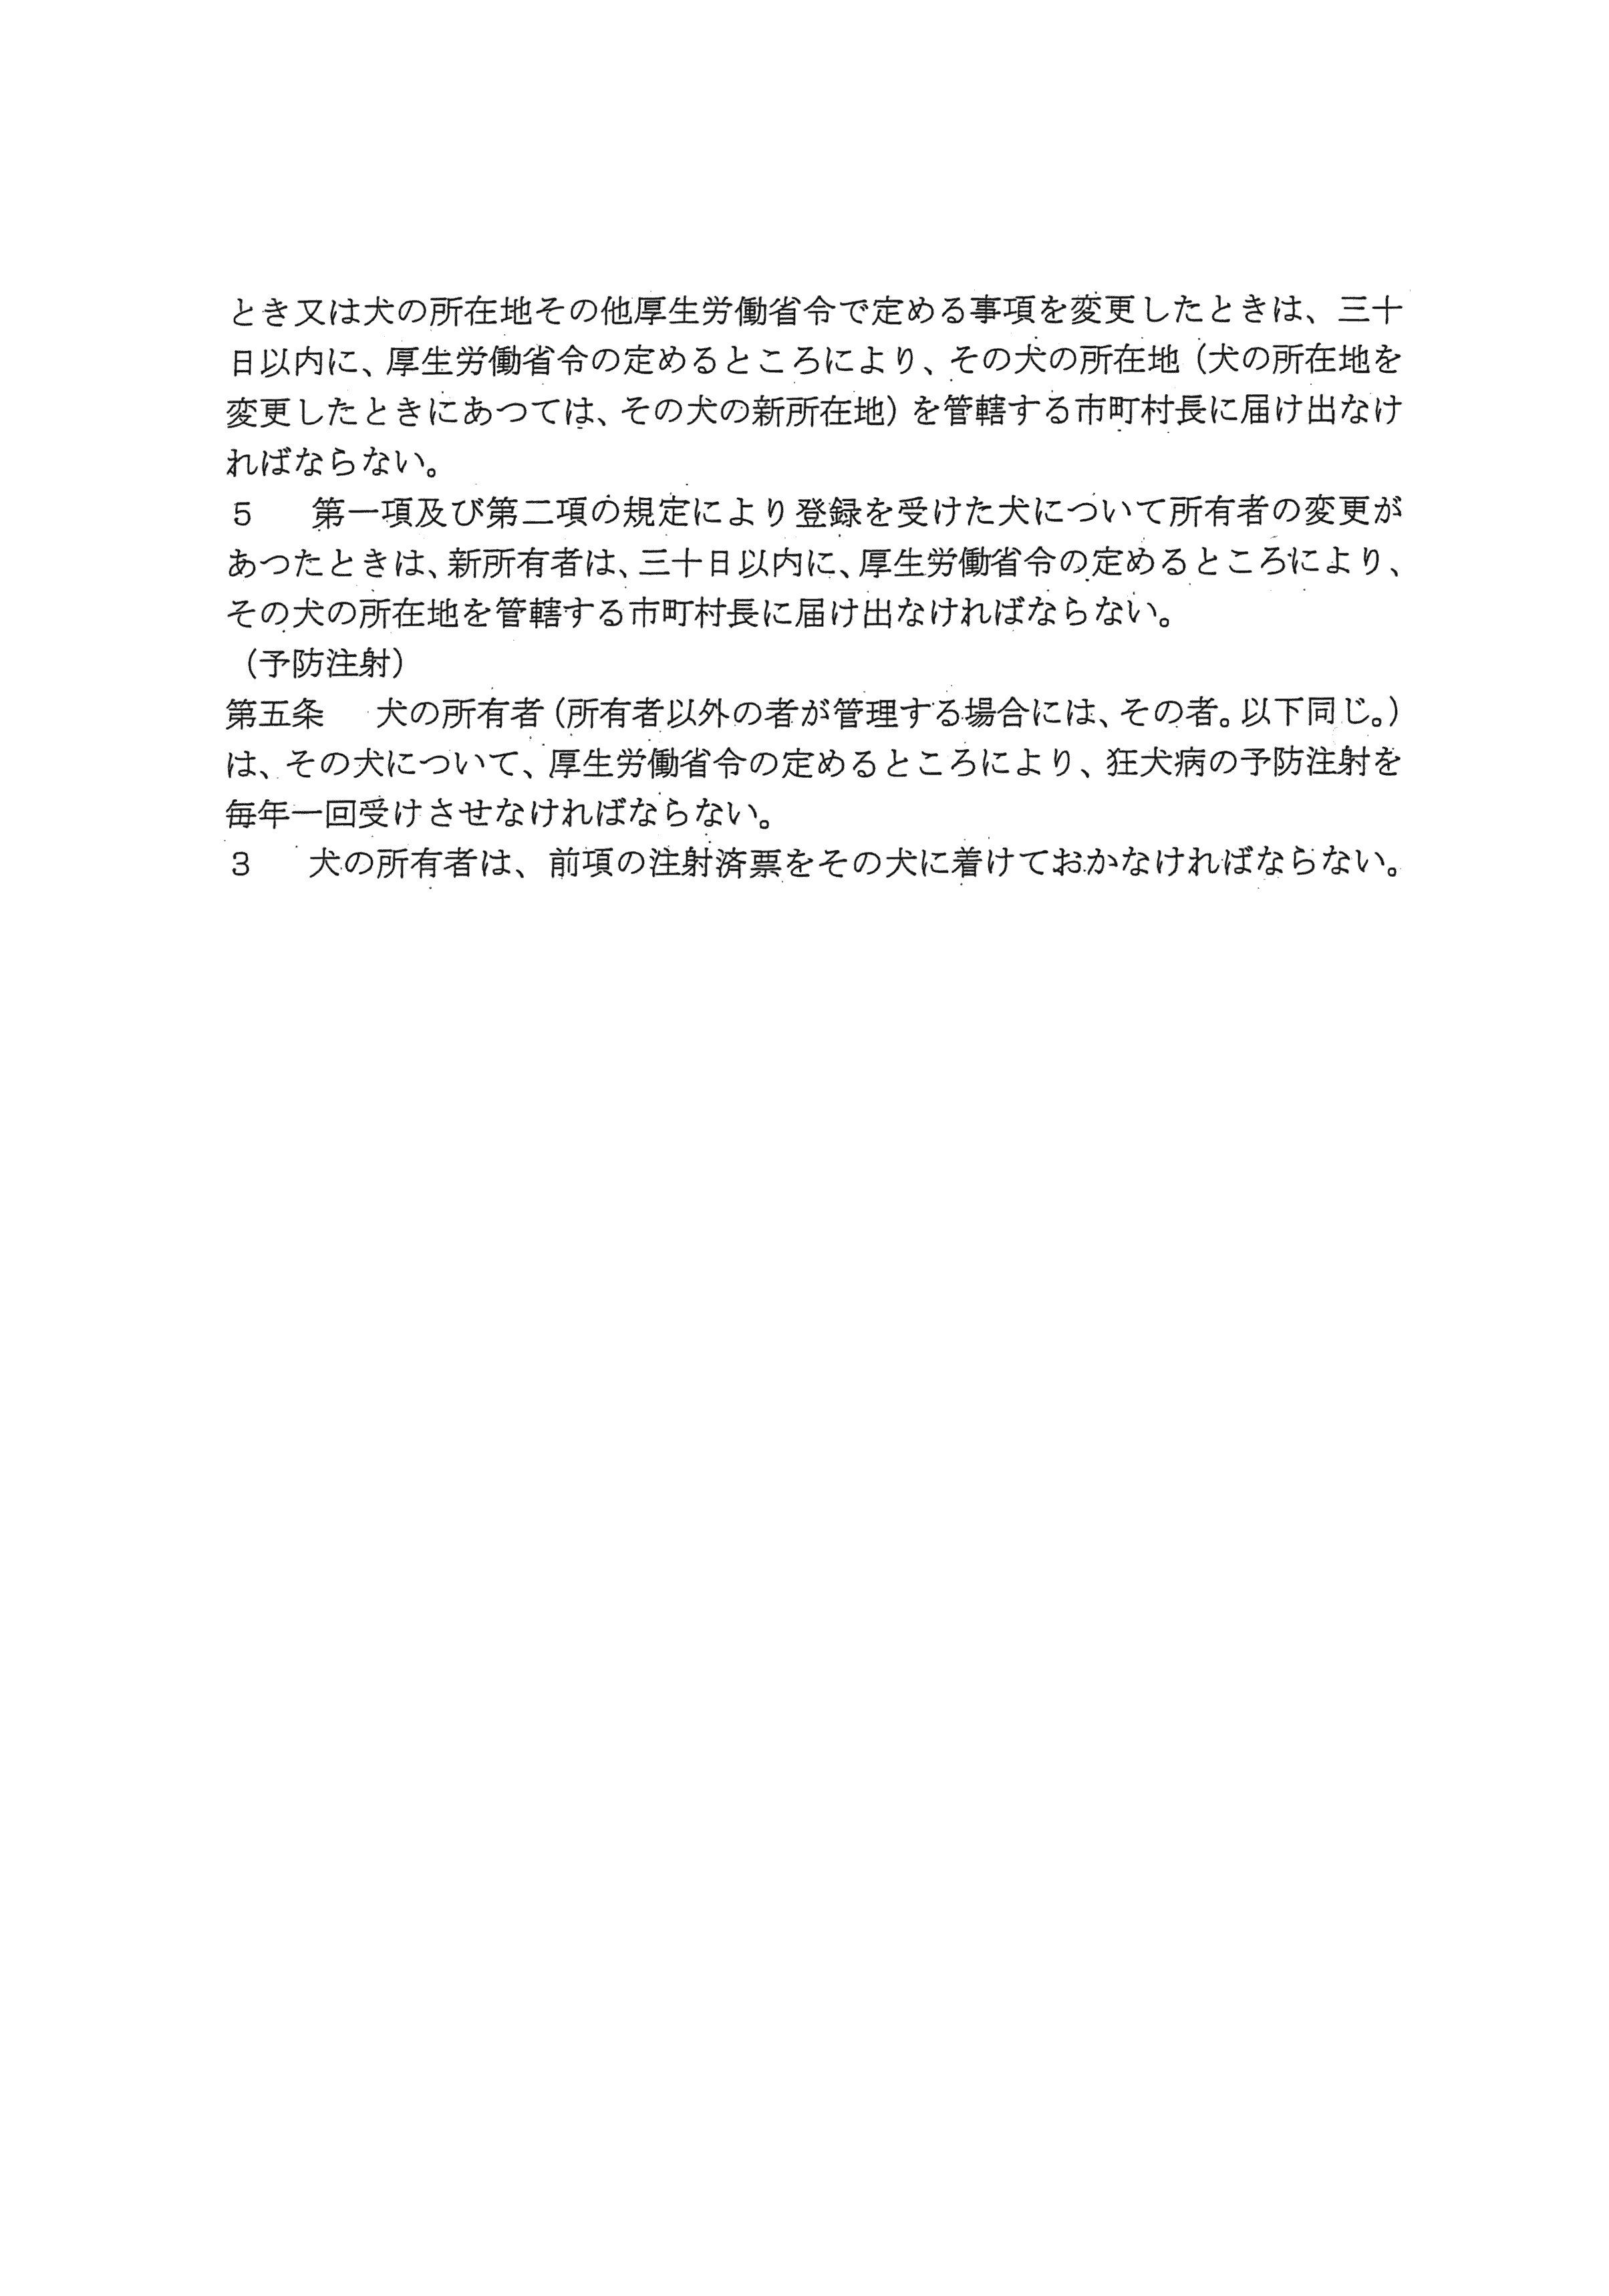 平成28年3月17日-奈良市保健所に対する要望書の手交について-05-条例